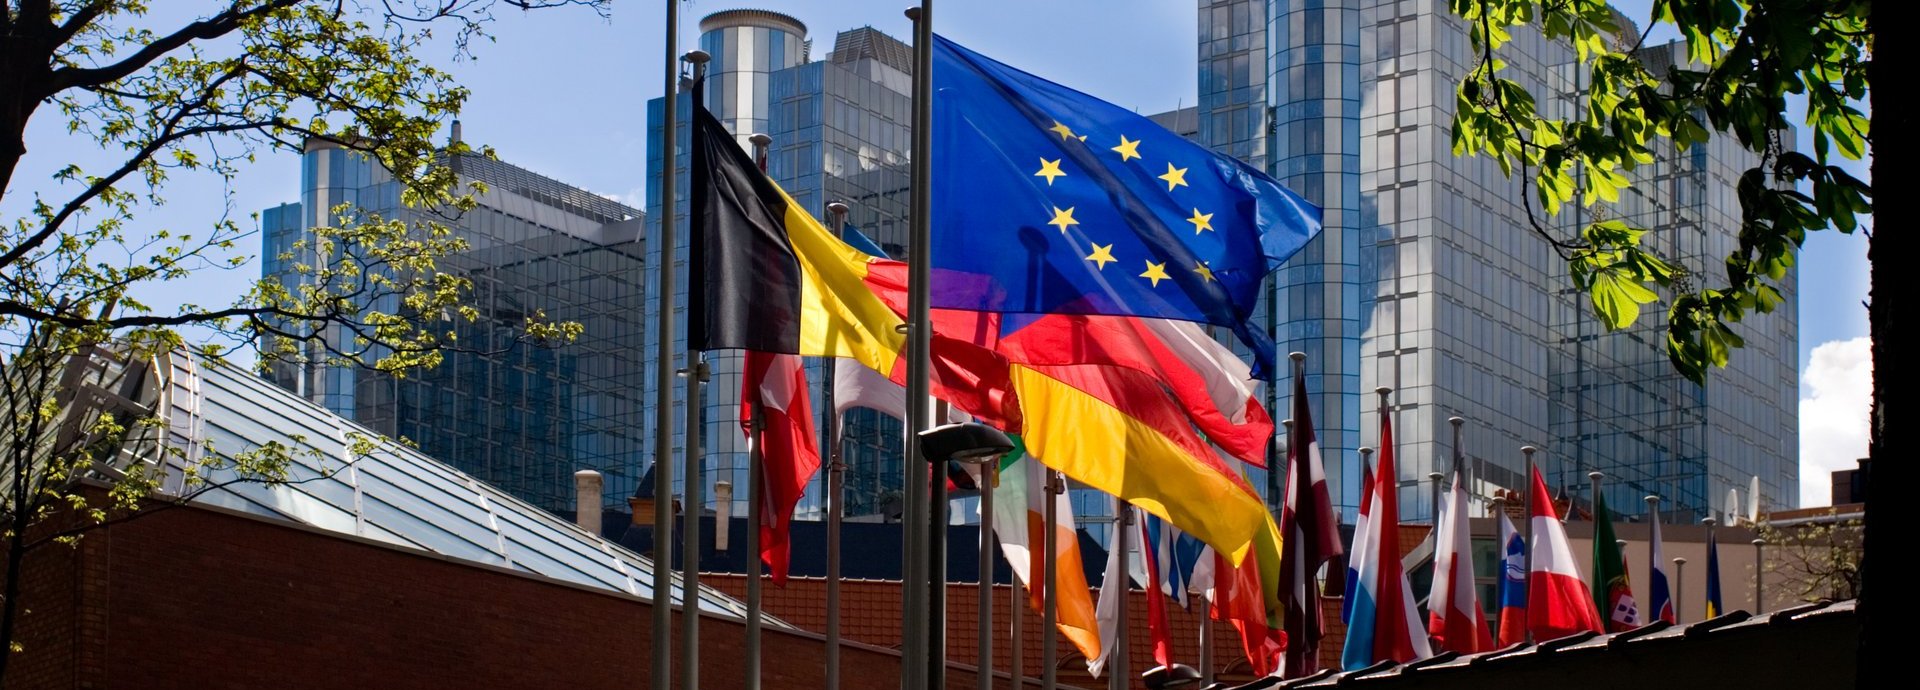 Europäische Flaggen umgeben von grünen Ästen mit Gebäuden im Hintergrund